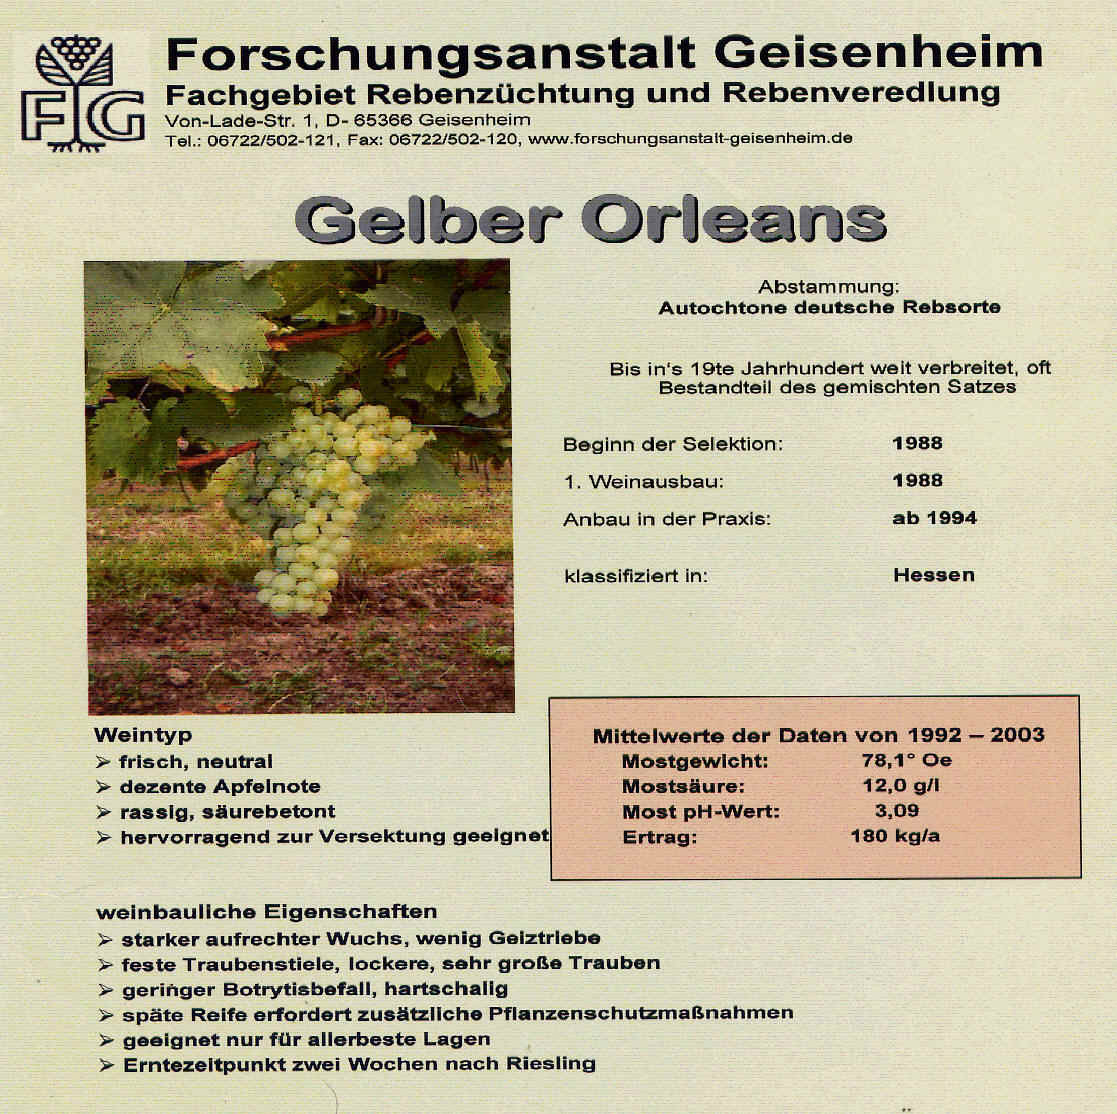 Gelber Orleans - Rebschule Müller